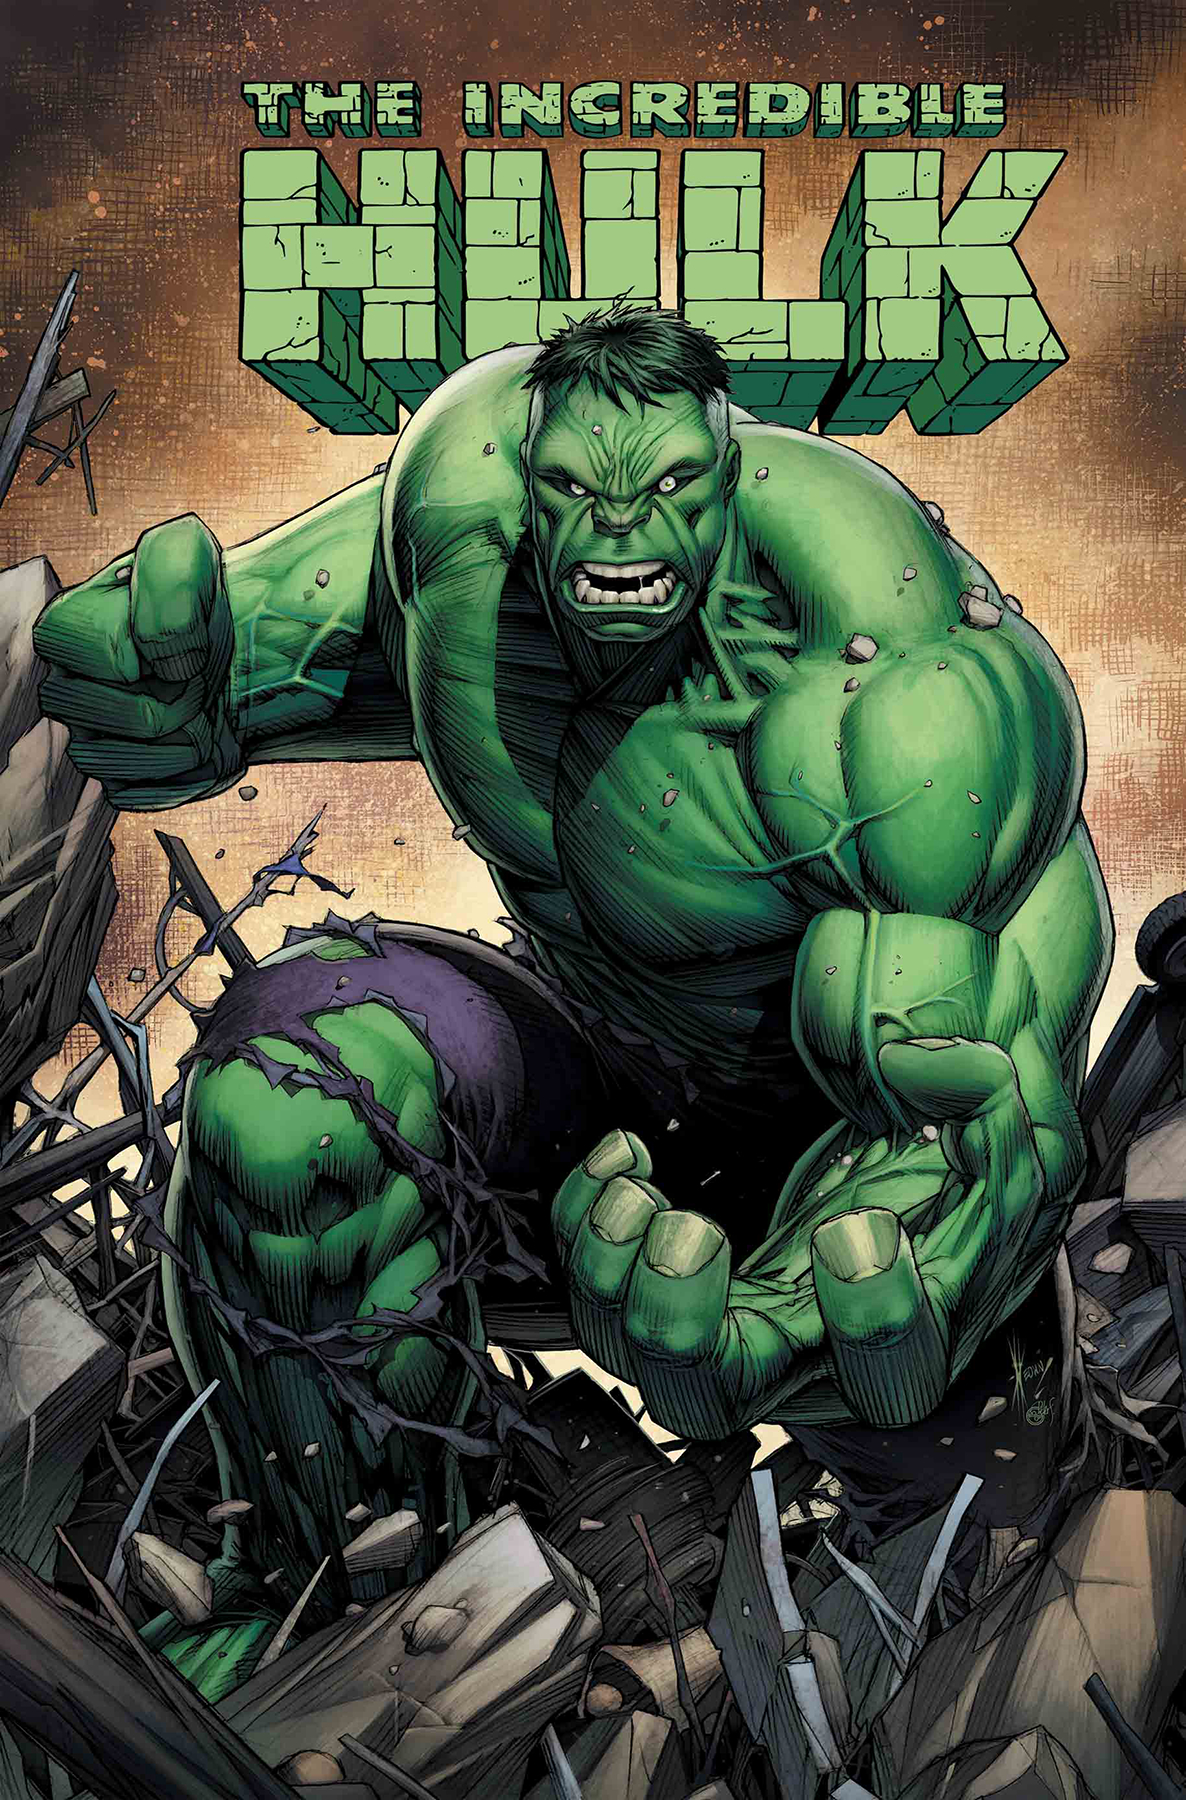 Incredible Hulk: Last Call no. 1 (2019) (One Shot)